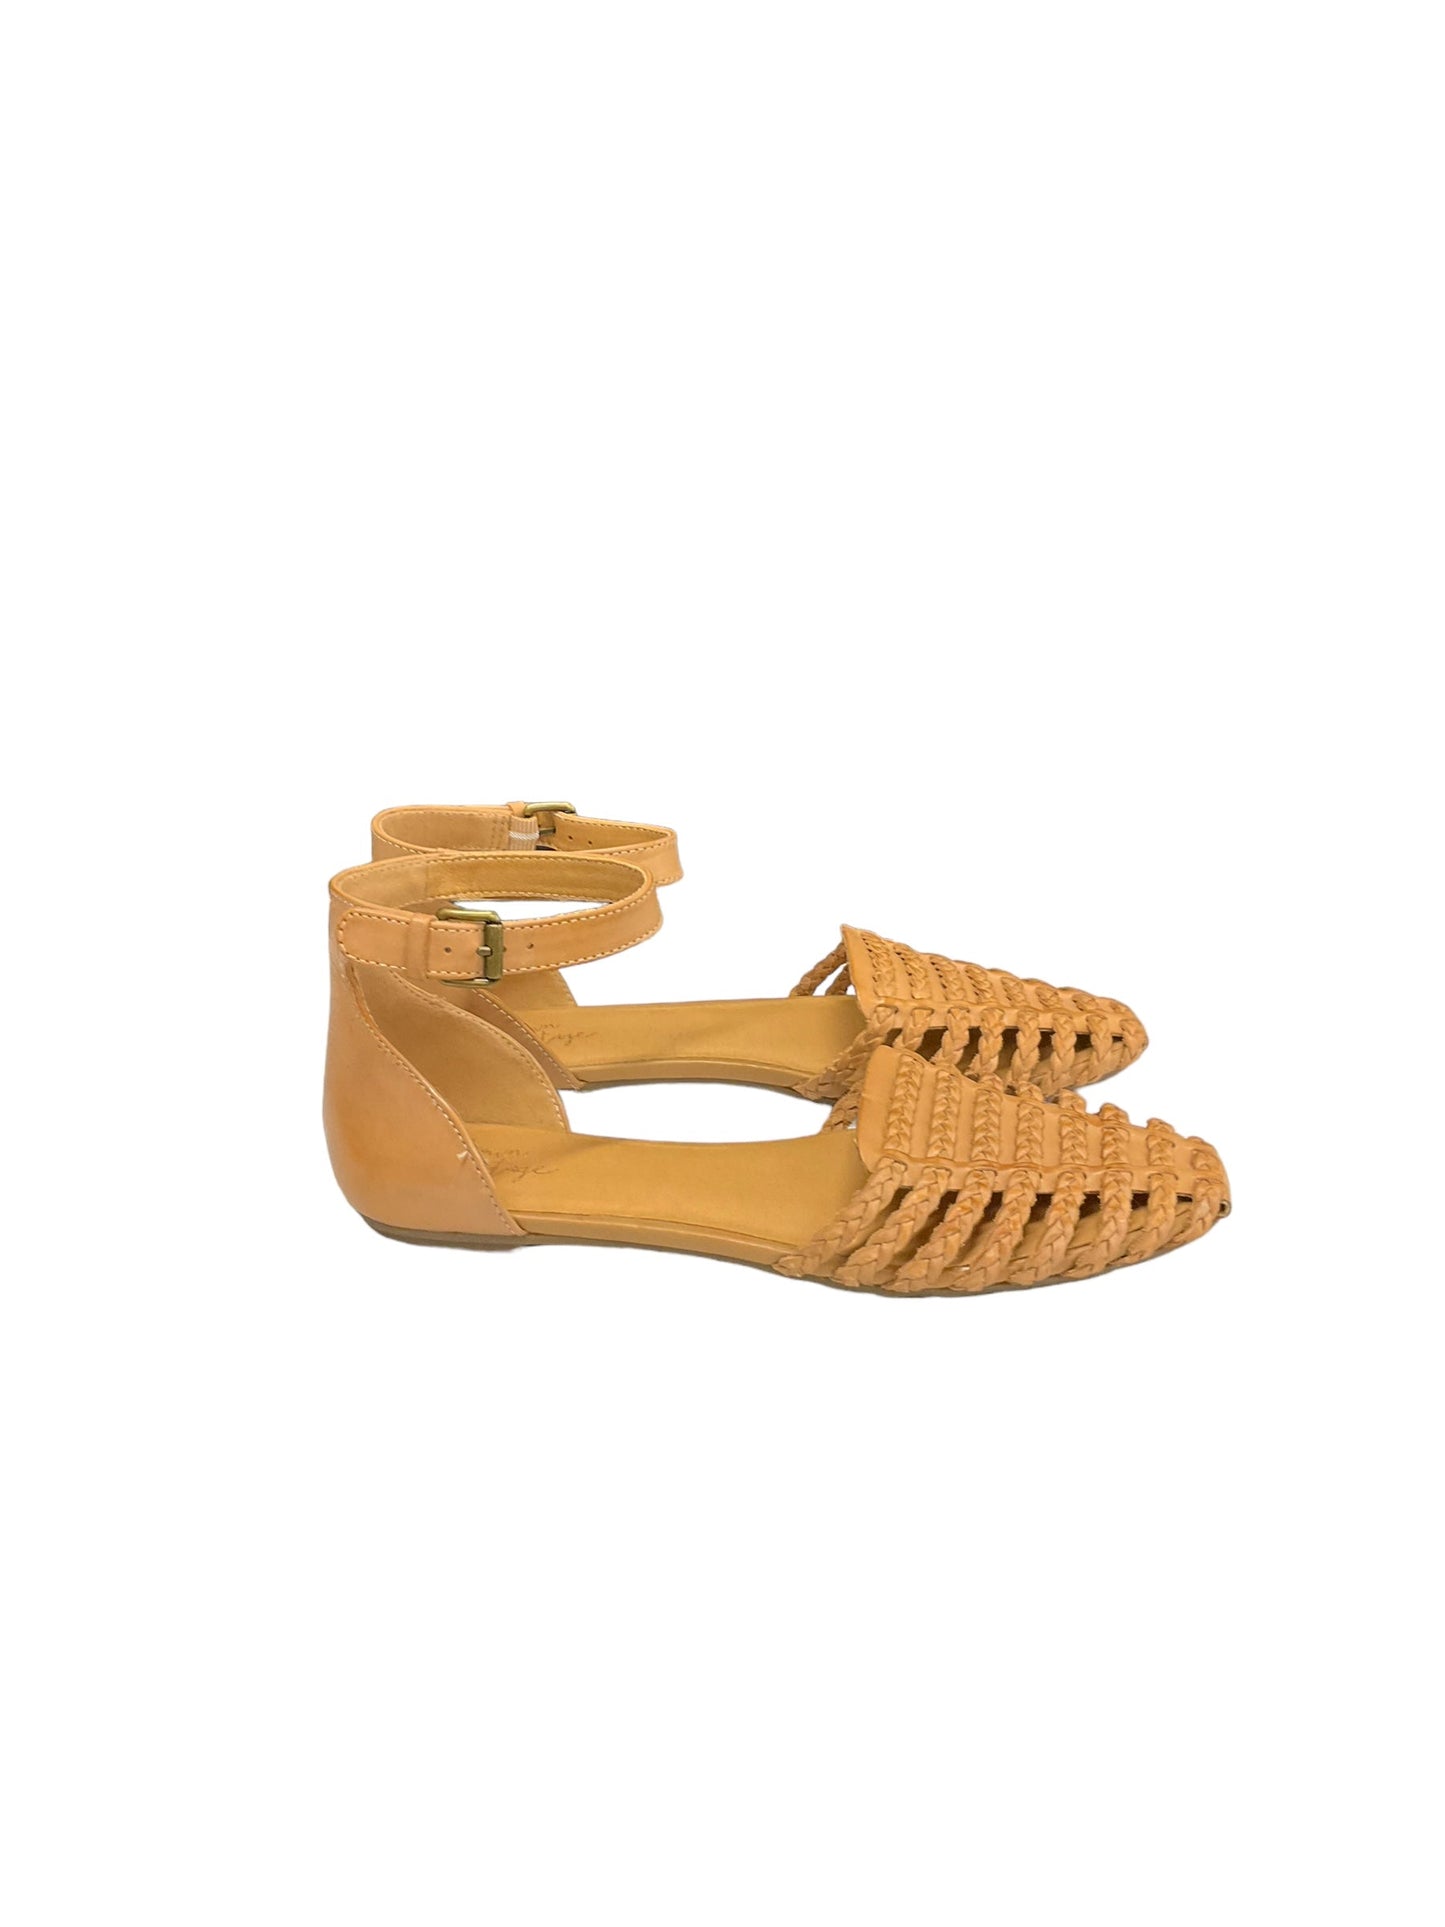 Tan Sandals Flats Crown Vintage, Size 8